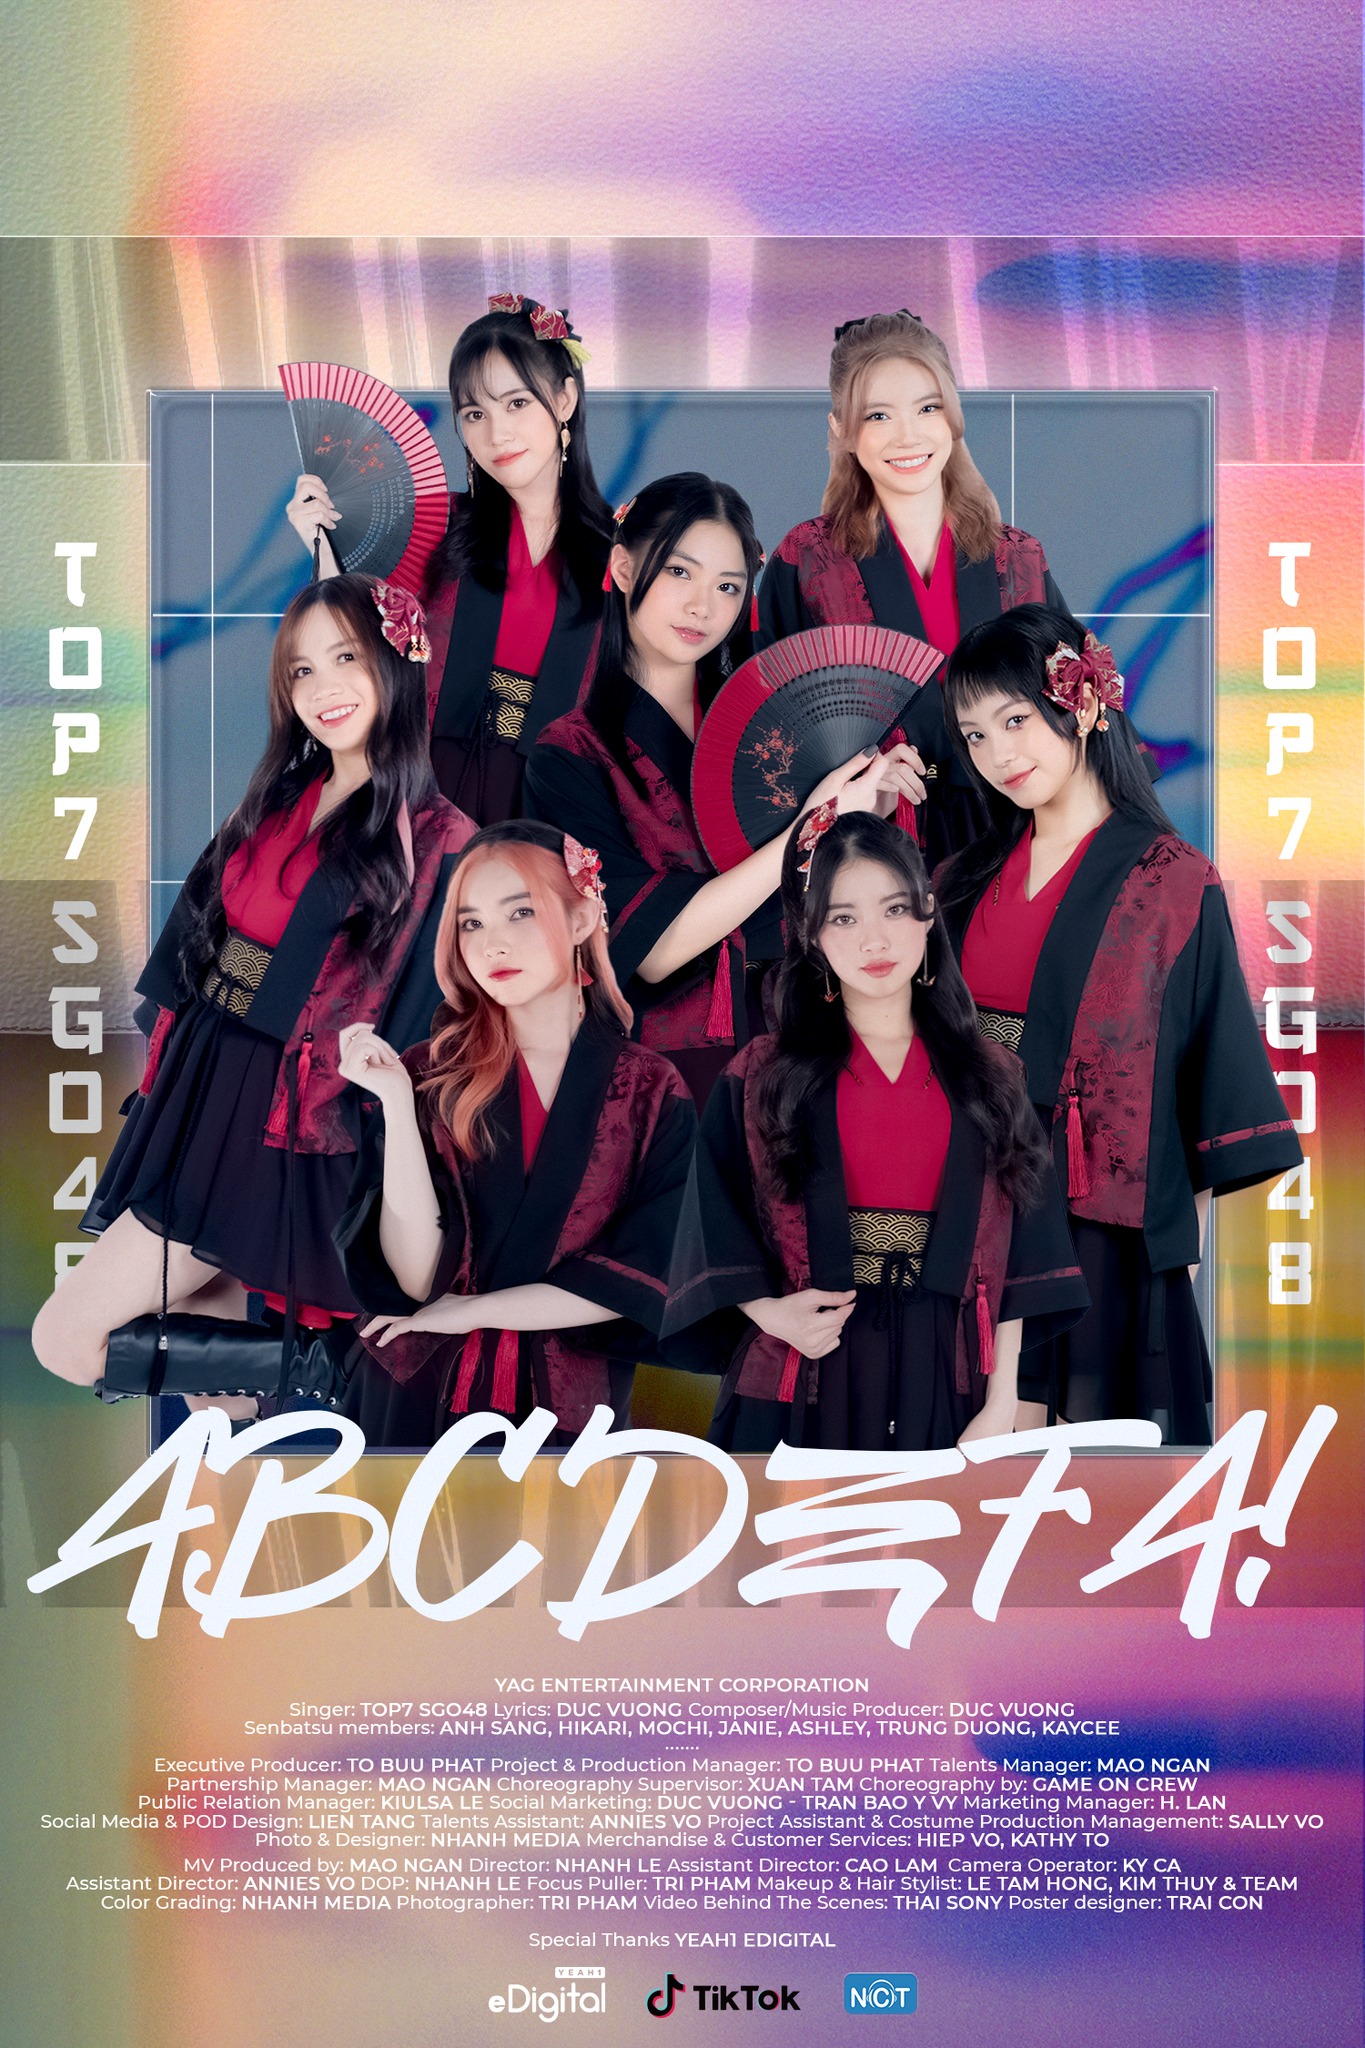  MV 'ABCDEFA' của 7 thành viên SGO48 vừa ra mắt 